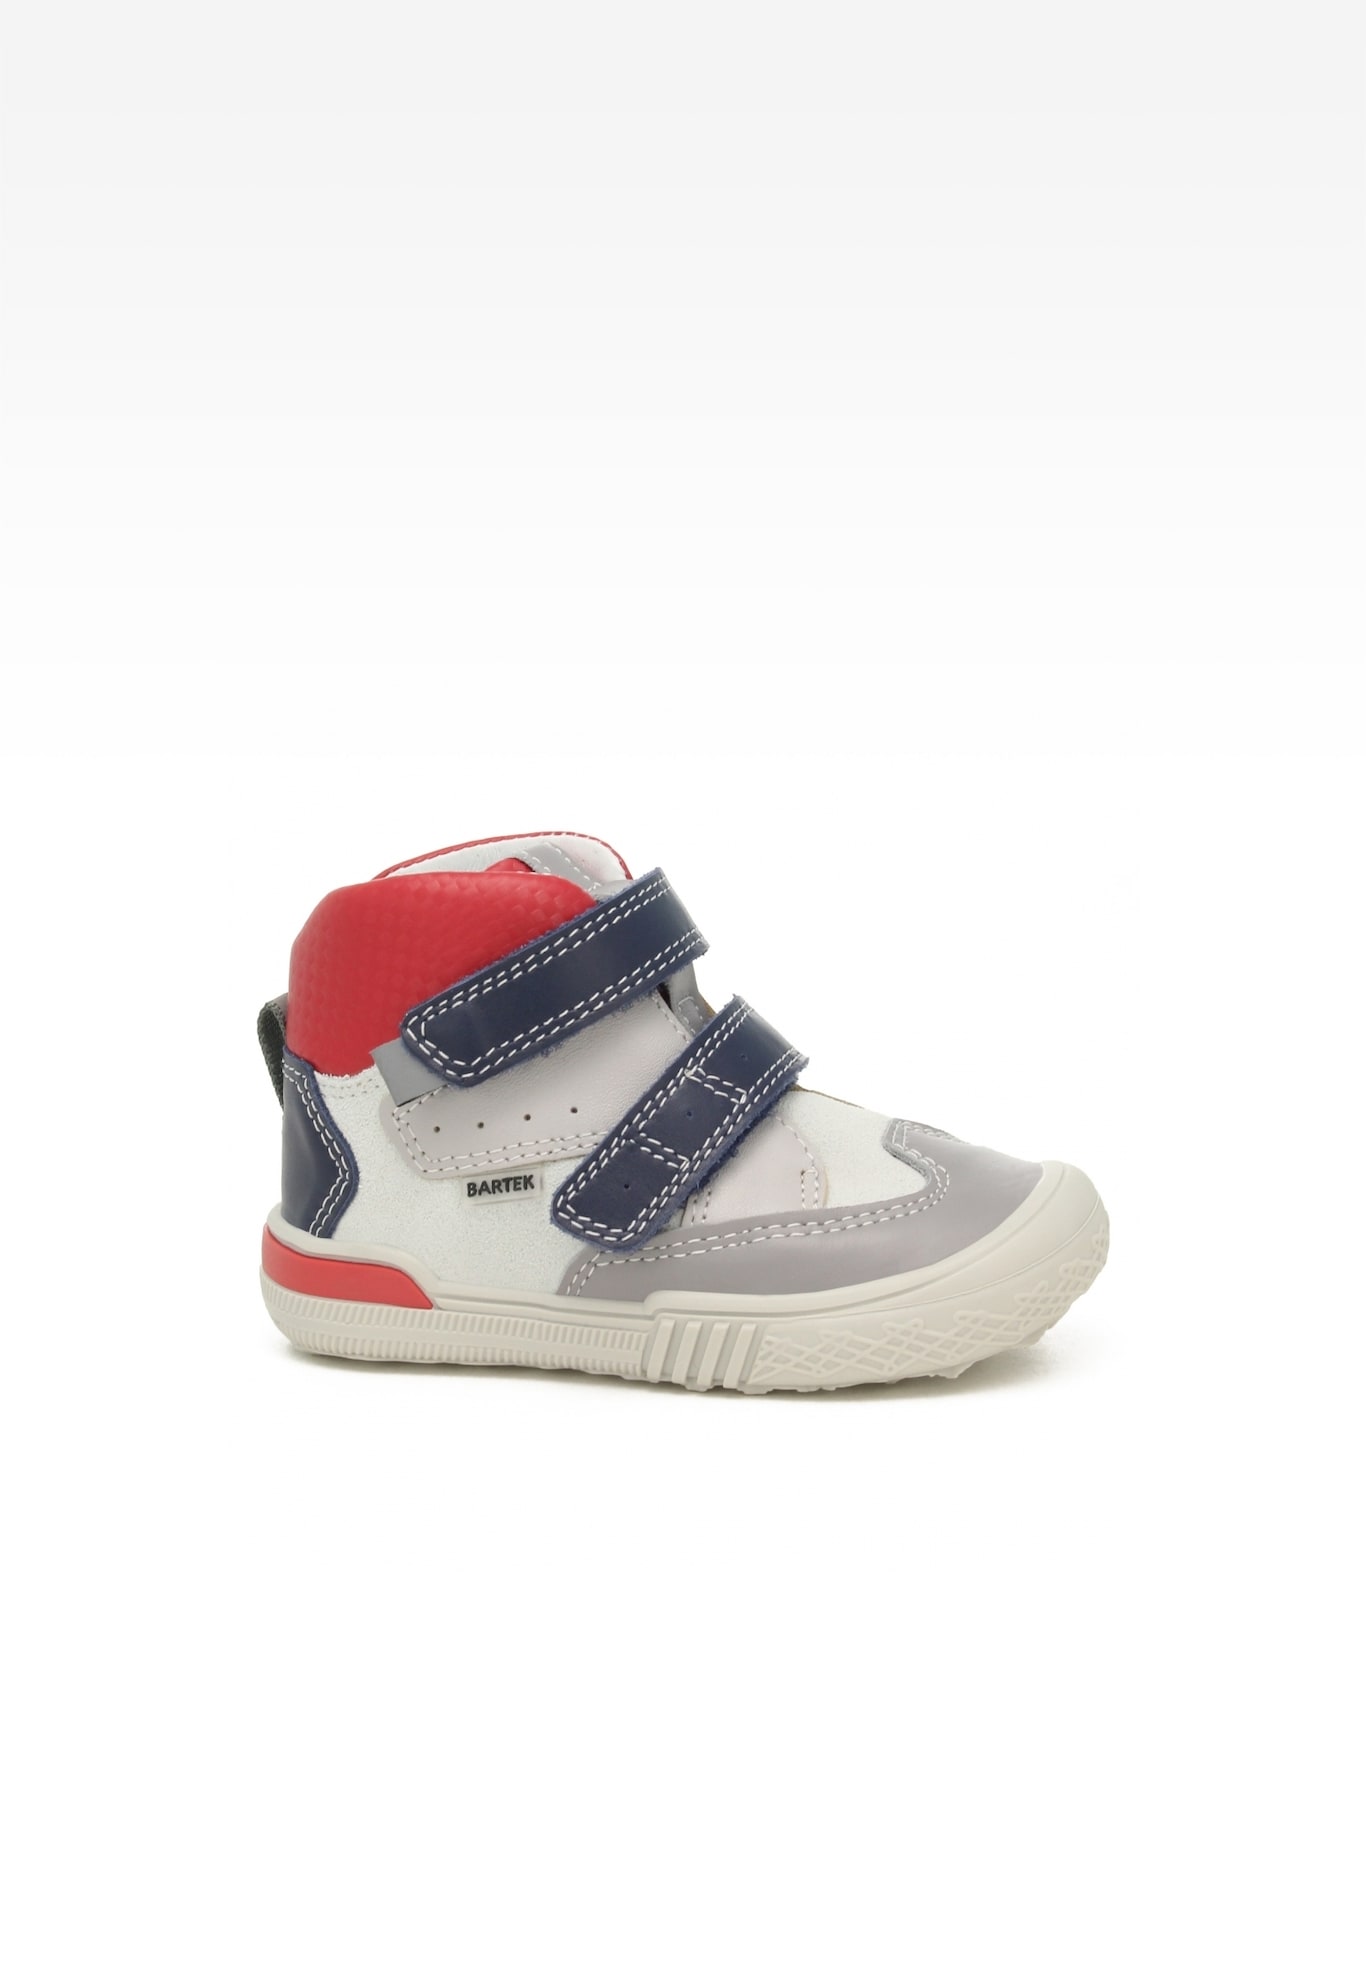 Sneakers BARTEK 021704-035 II, dla chłopców, biało-granatowy